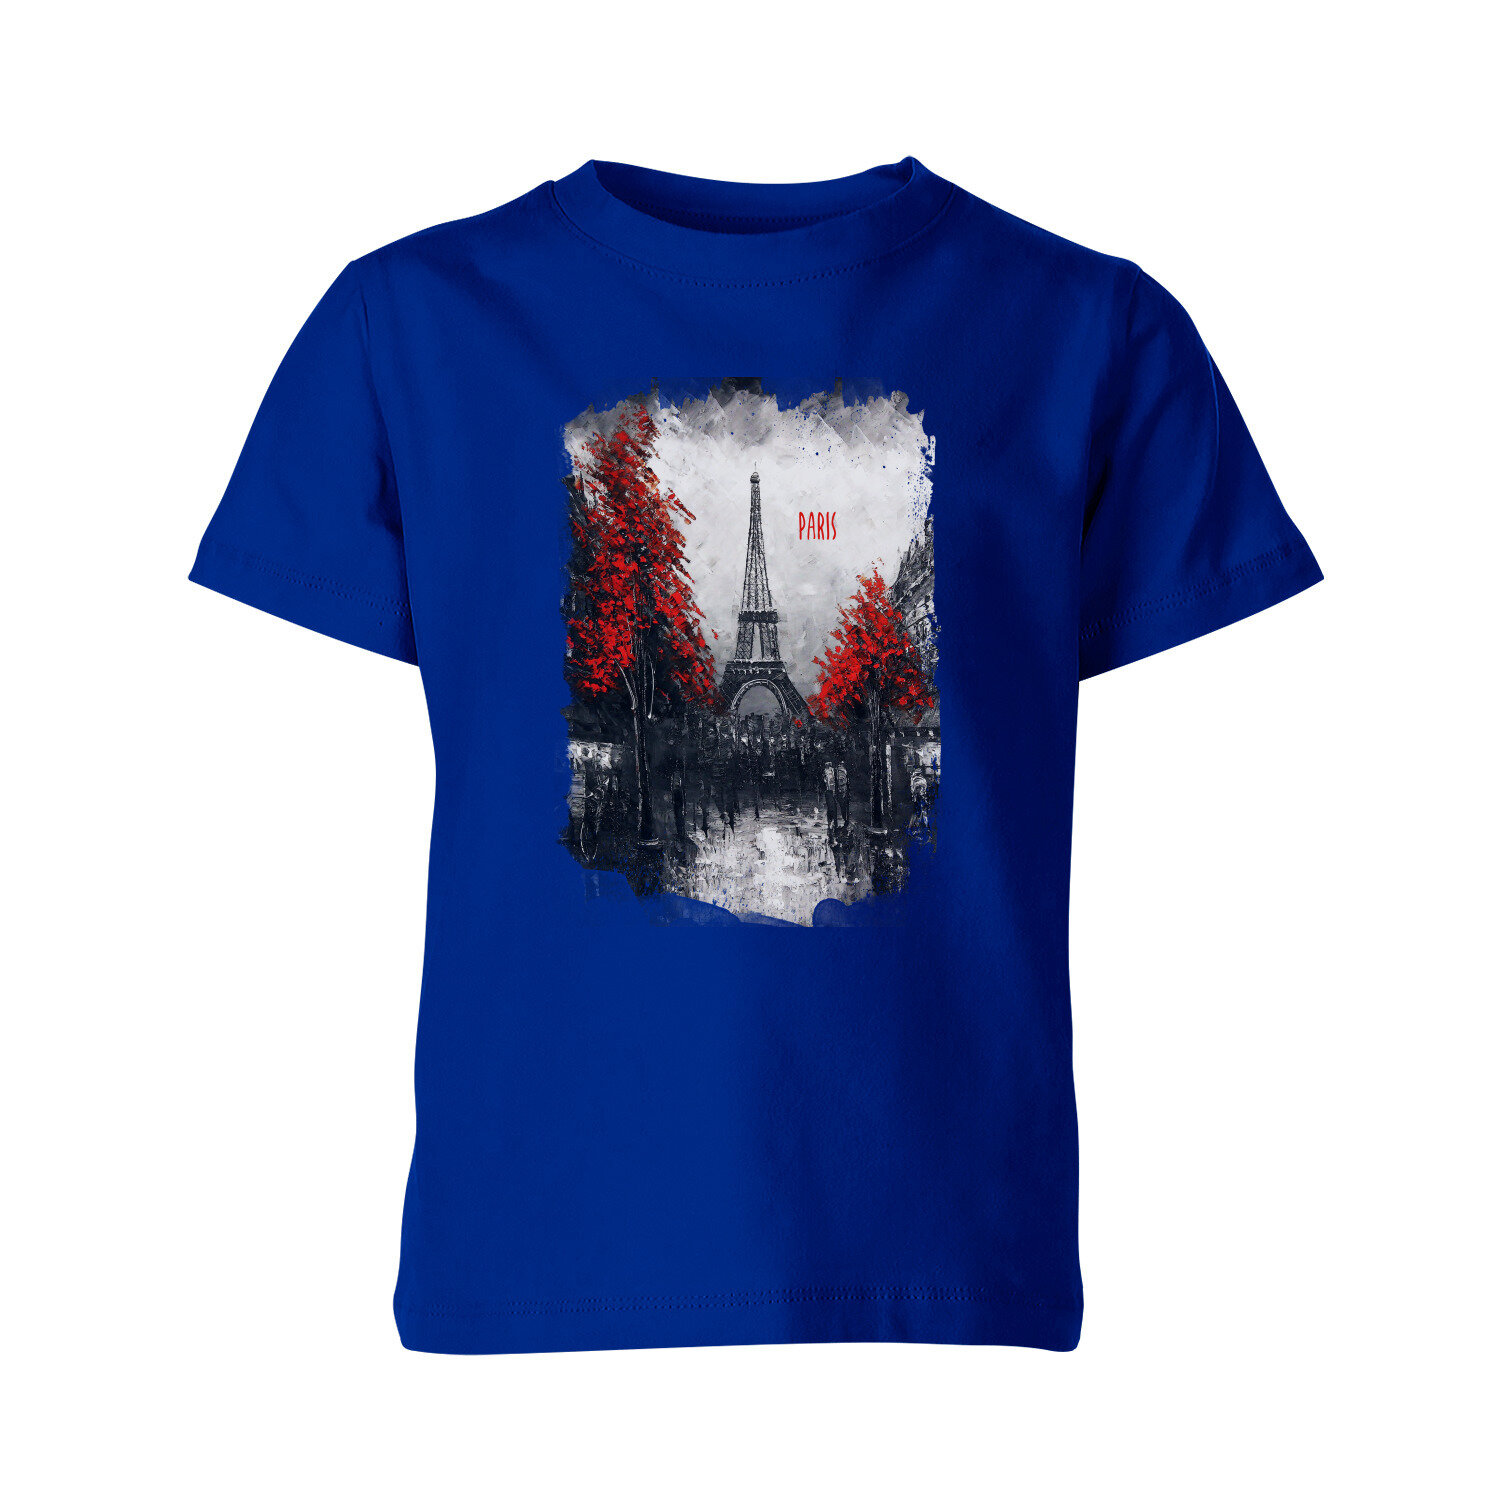 Детская футболка «Париж - Paris, города, масло, картина, башня» (140, синий)